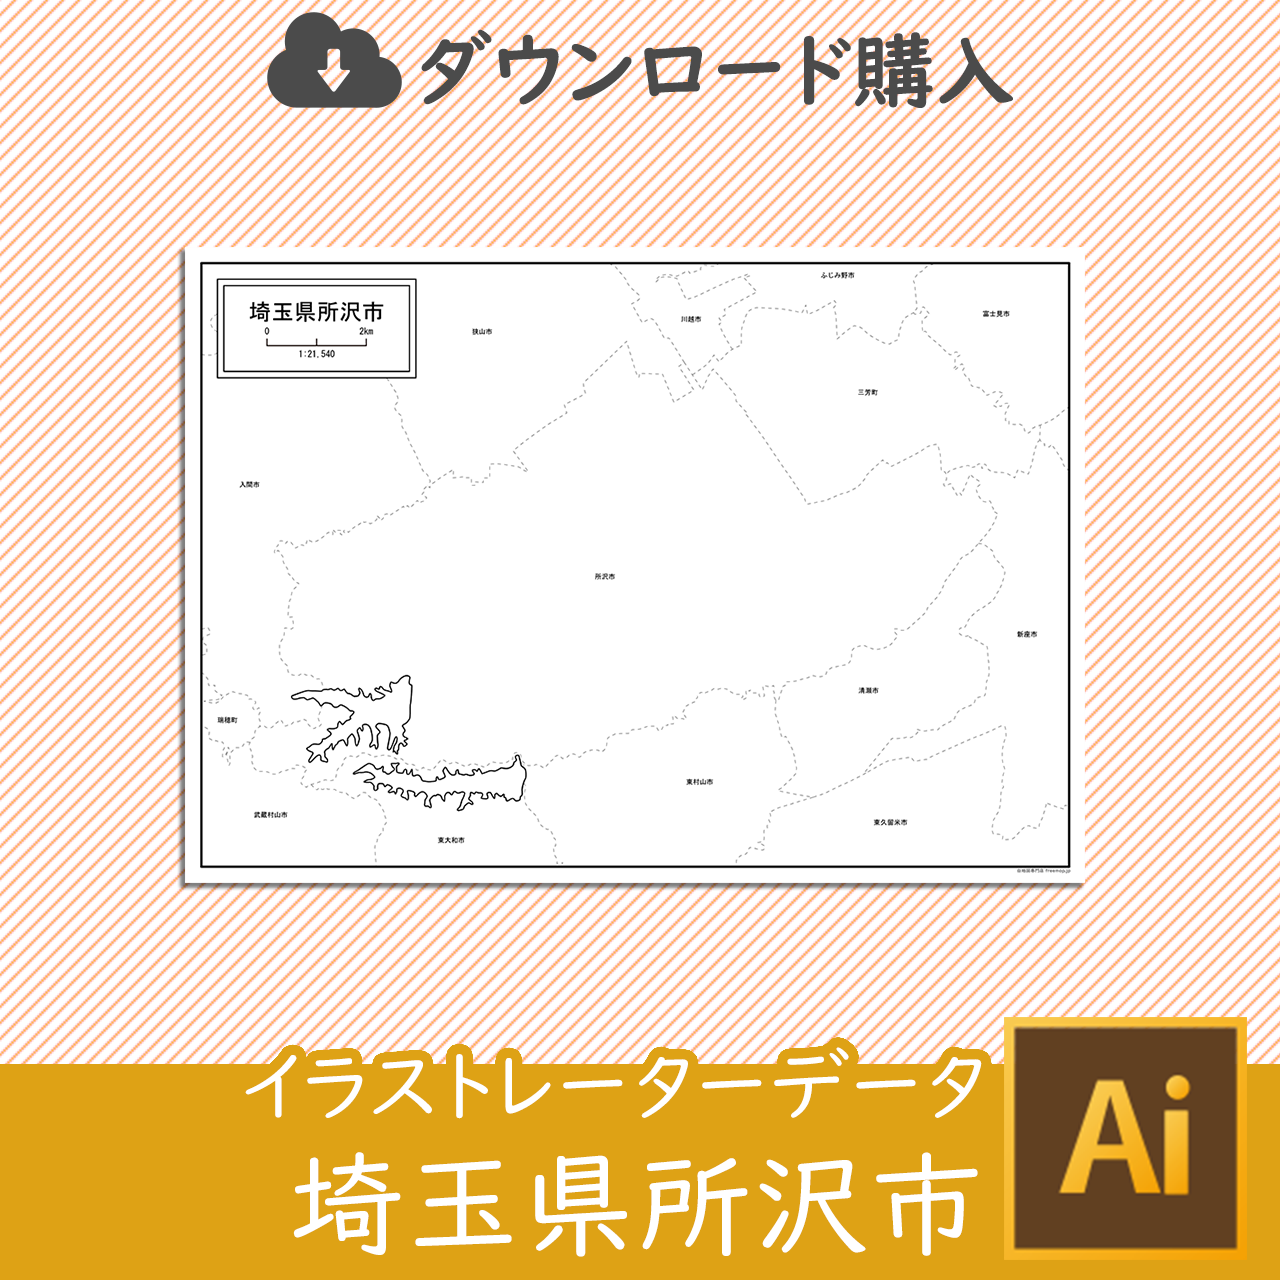 所沢市のaiデータのサムネイル画像